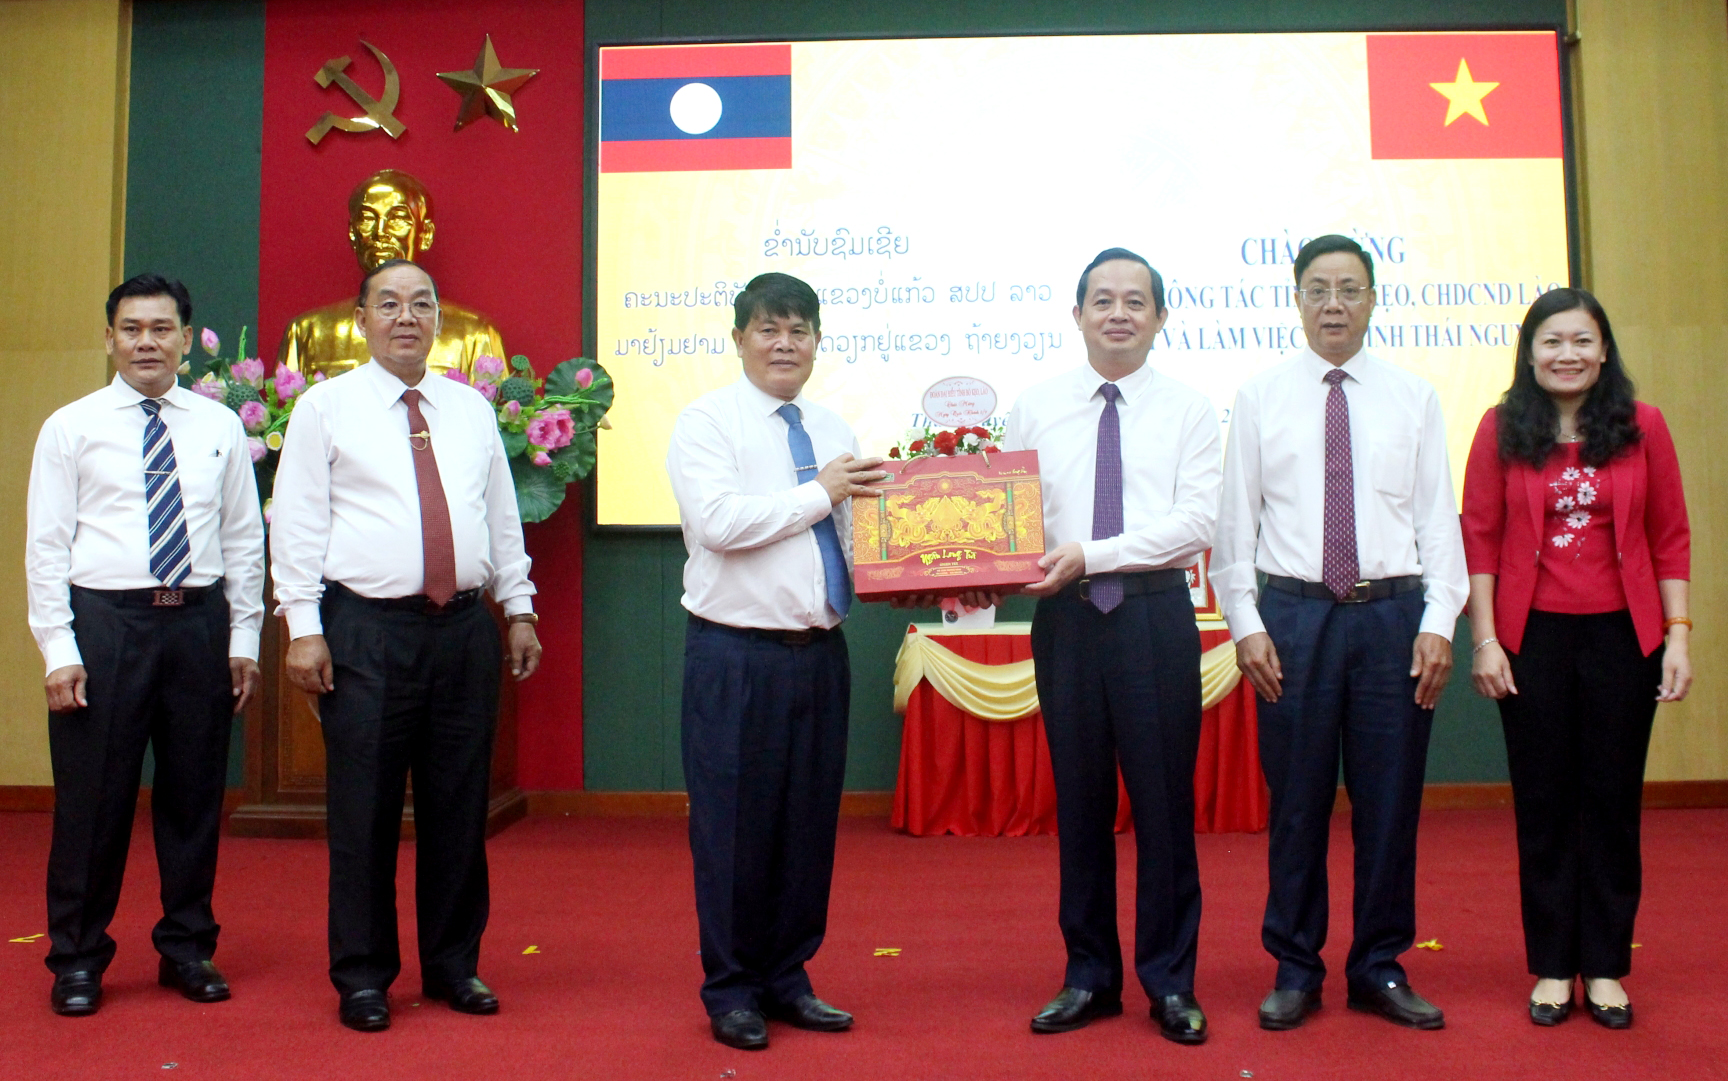 Đồng chí Phạm Hoàng Sơn, Phó Bí thư Thường trực Tỉnh ủy, Chủ tịch HĐND tỉnh tặng quà lưu niệm cho Đoàn đại biểu cấp cao của tỉnh Bò Kẹo.